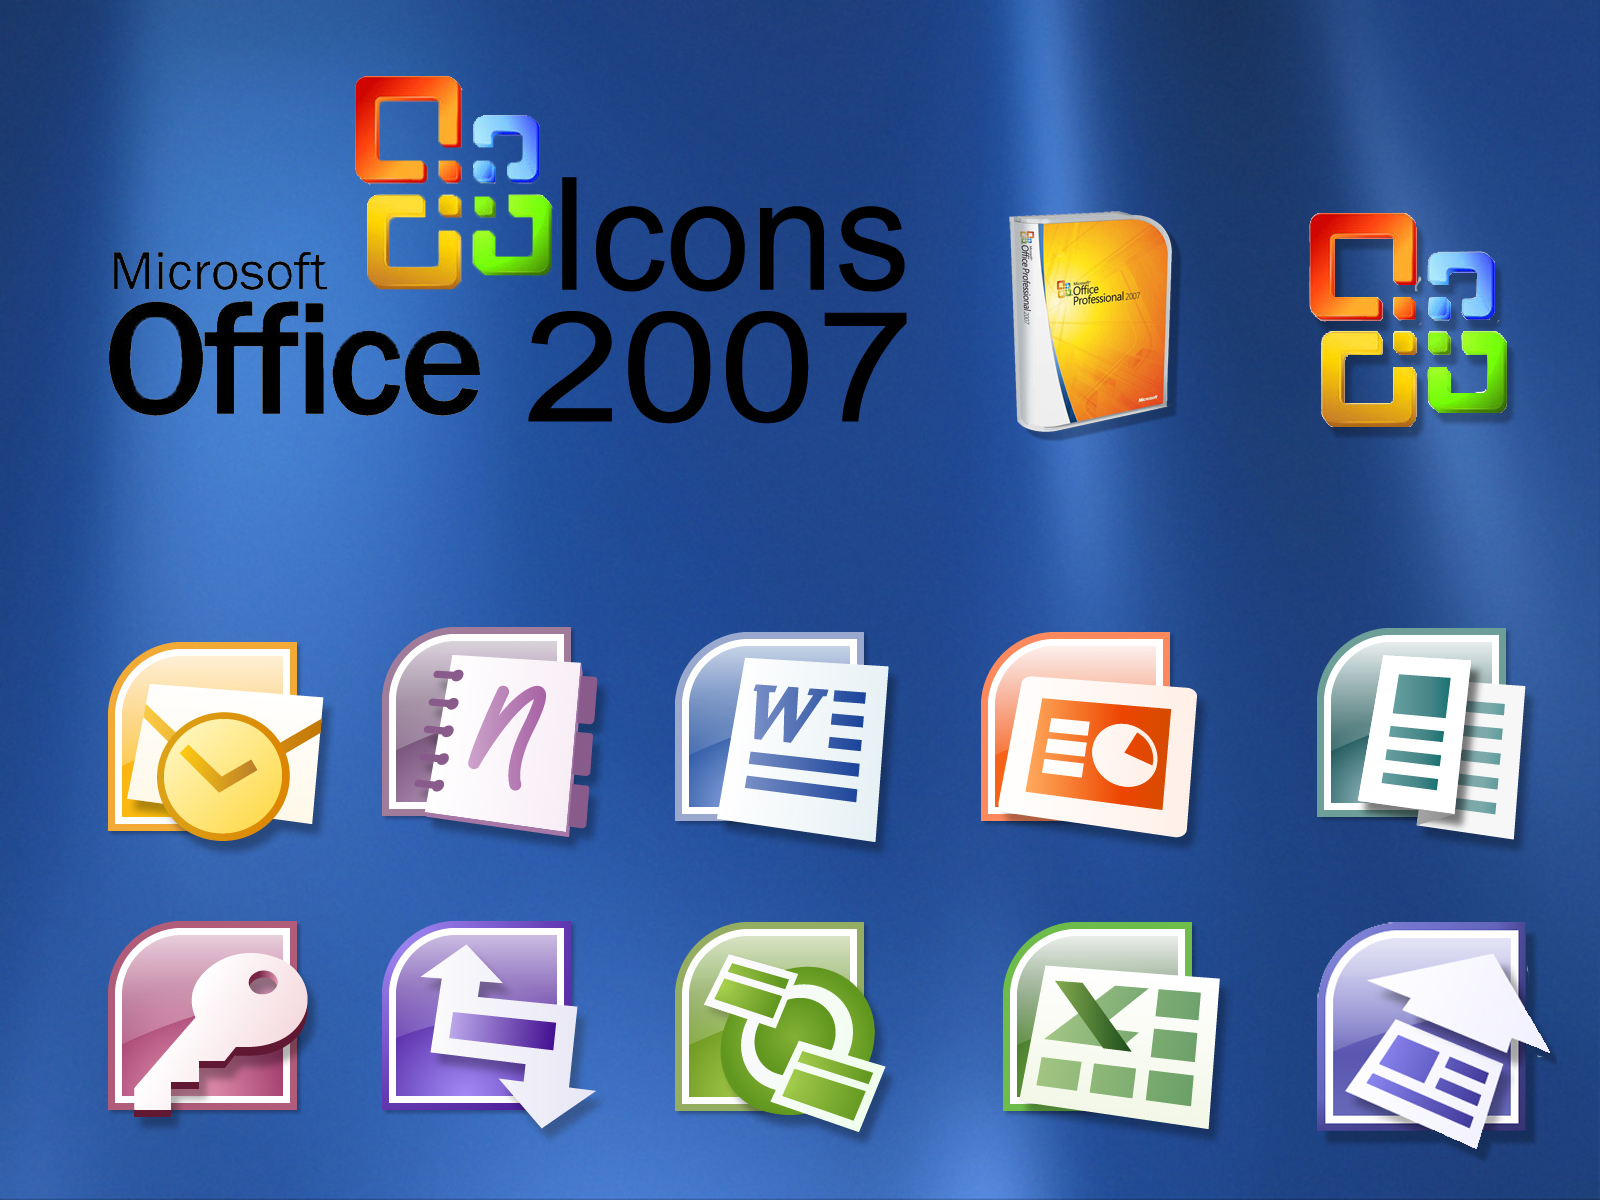 Office softportal. МС офис 2007. Microsoft Office 2007. Офисные приложения. Майкрософт офис 2007.